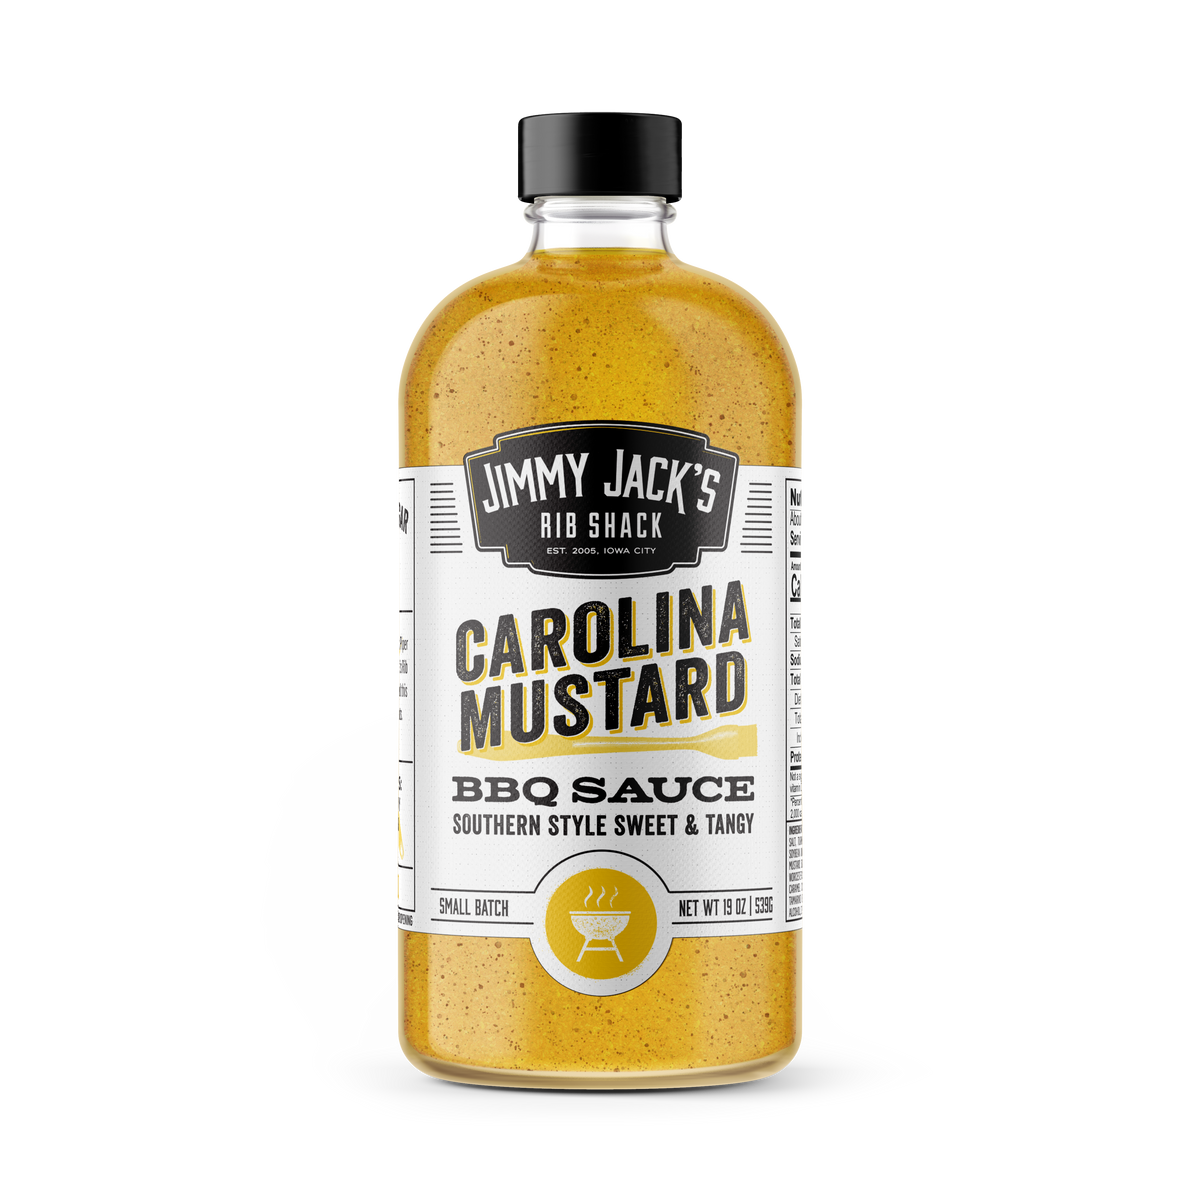 Jimmy Jack’s Rib Shack Carolina Mustard BBQ Sauce